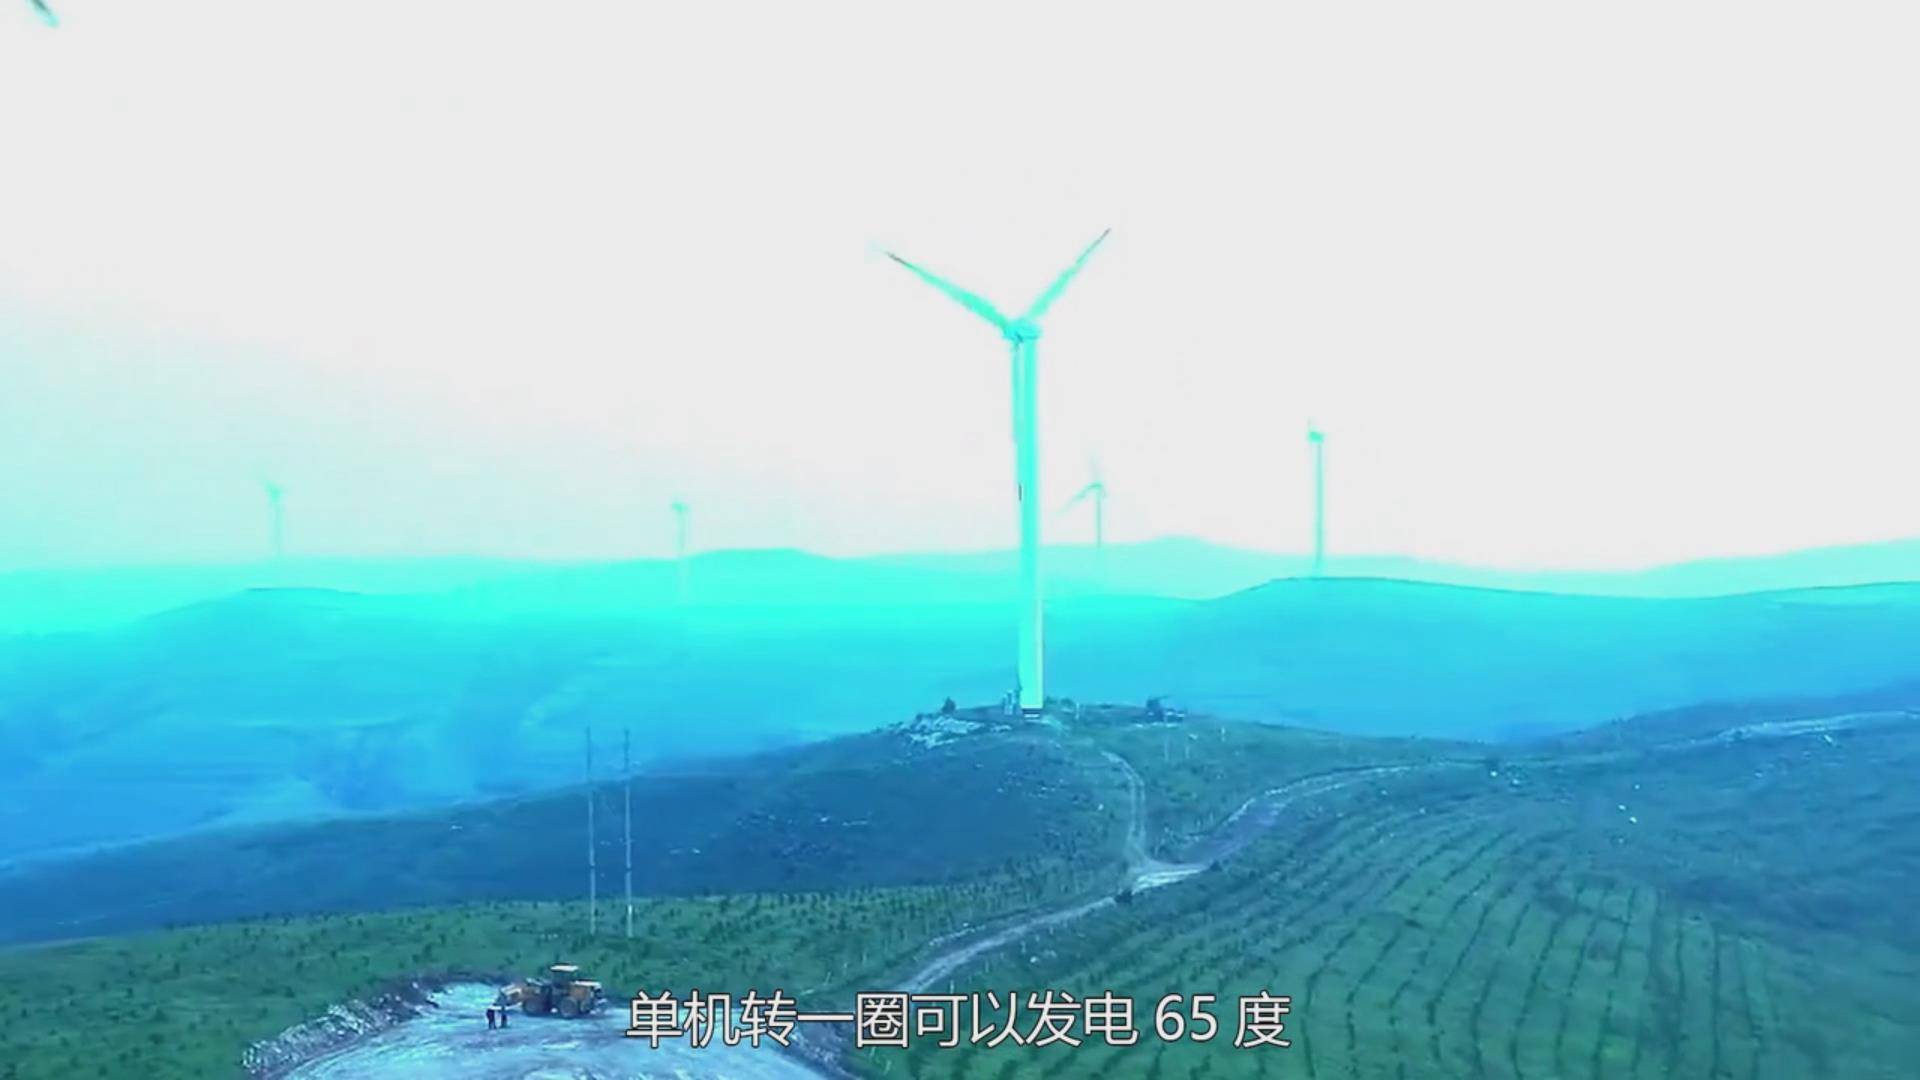 中国造出世界最大风电机,单机转一圈发电65度